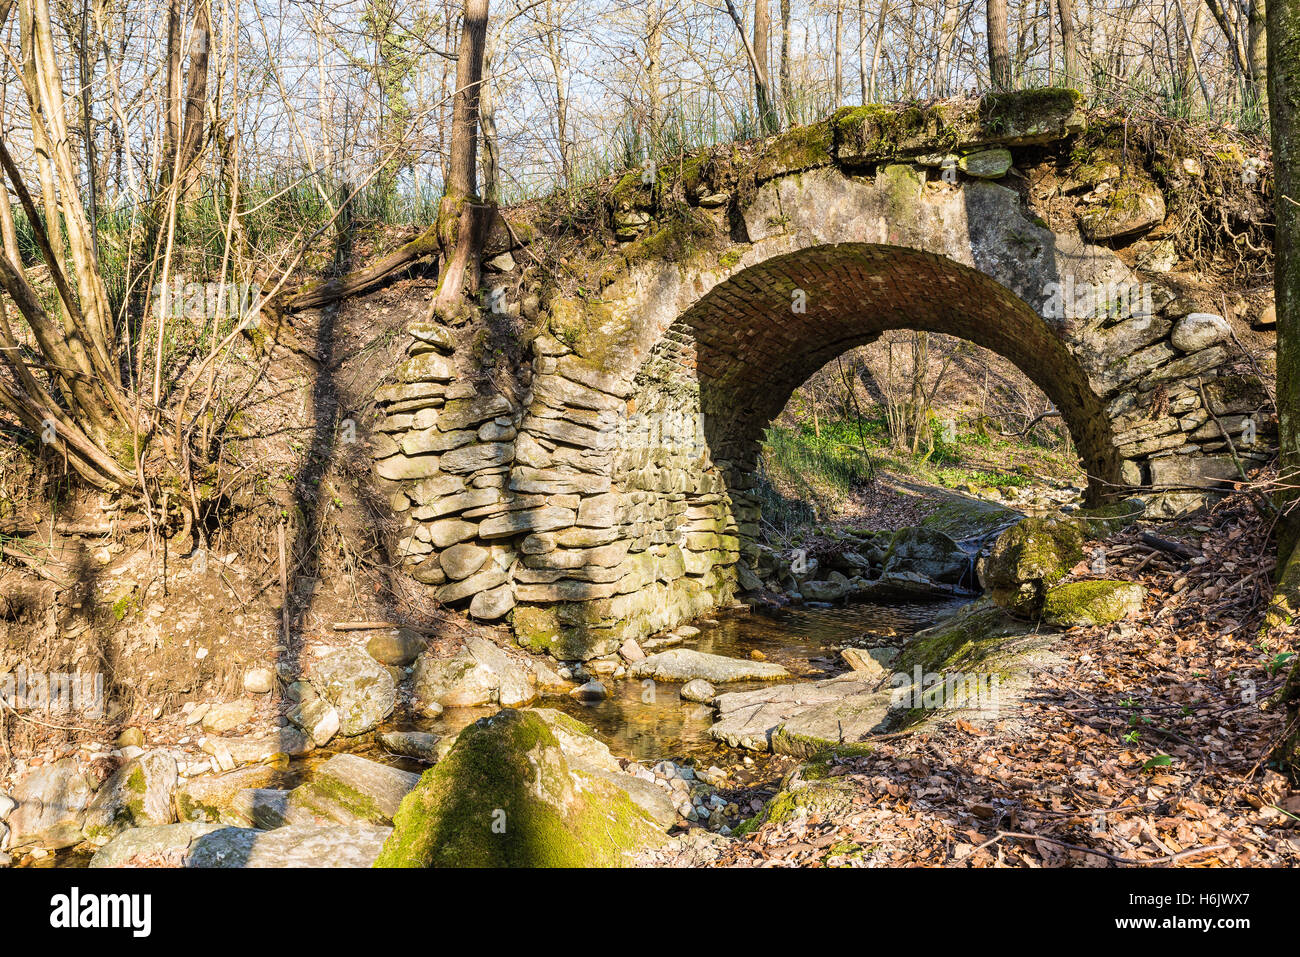 Old stone bridge built with dry stones Stock Photo